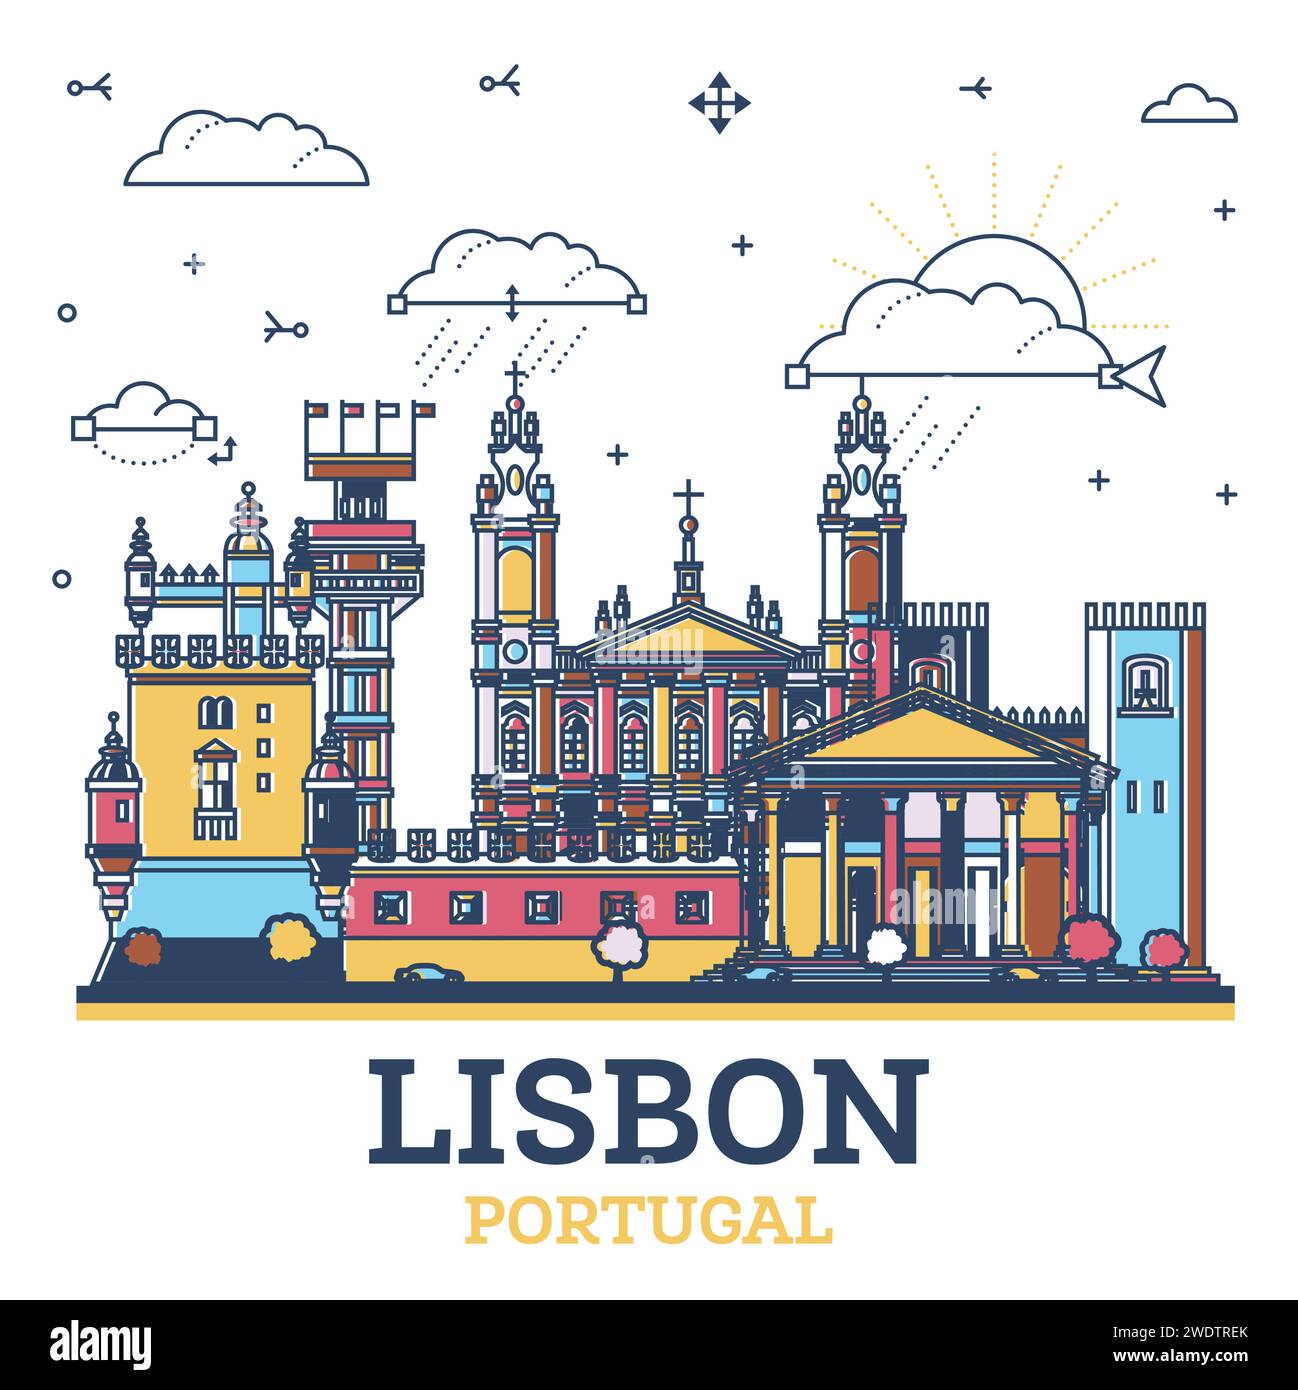 Umreißen Sie die Skyline der Stadt Lissabon Portugal mit farbigen modernen und historischen Gebäuden, die auf weiß isoliert sind. Vektorabbildung. Lissabonner Stadtbild. Stock Vektor